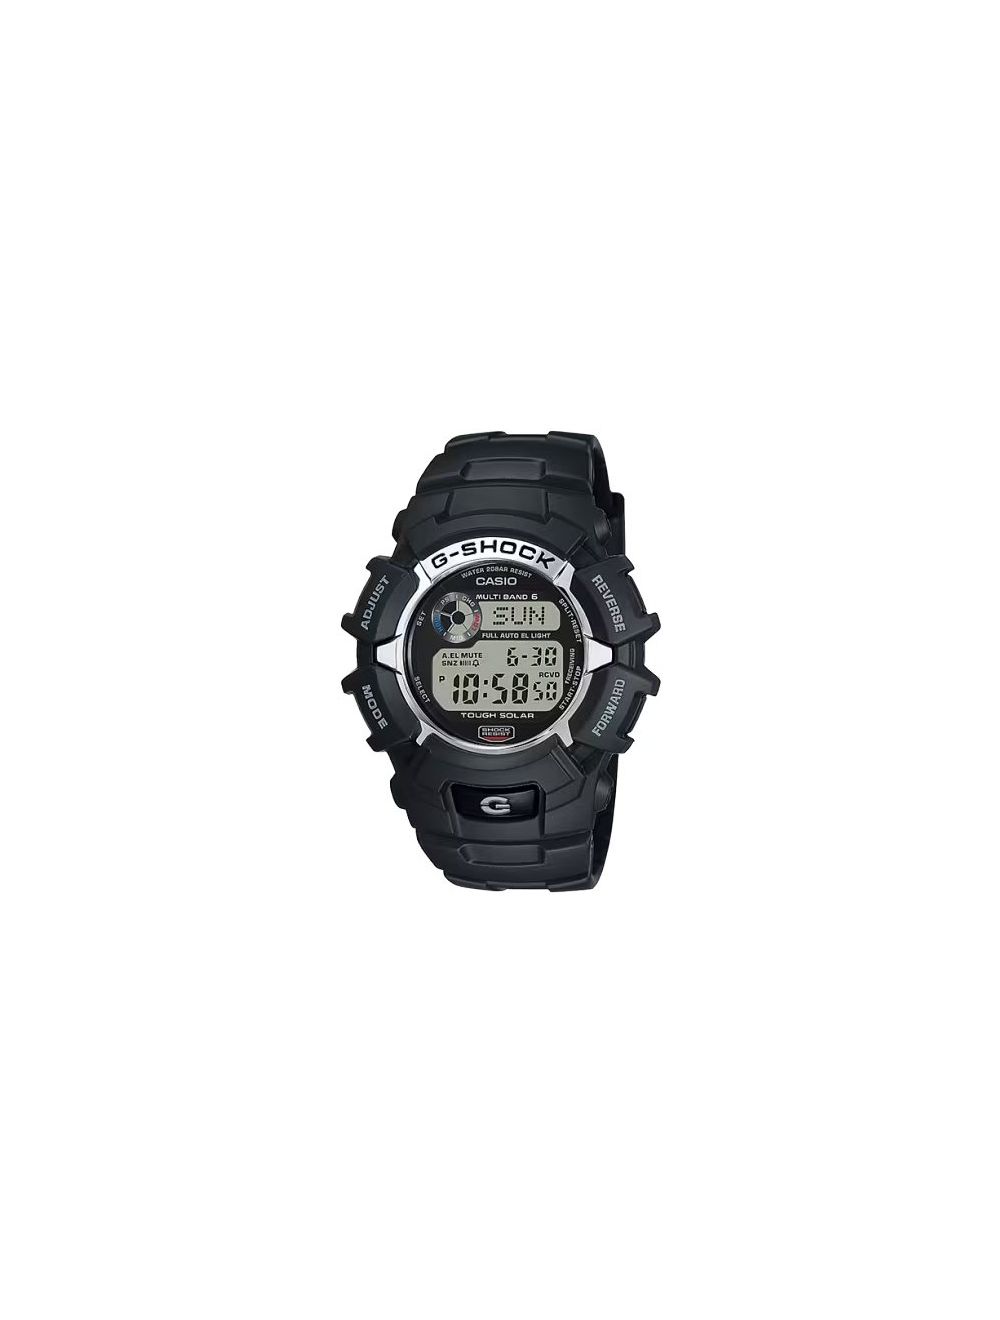 G-Shock 2300 Series Solar Powered Atomic-Timekeeping Watch